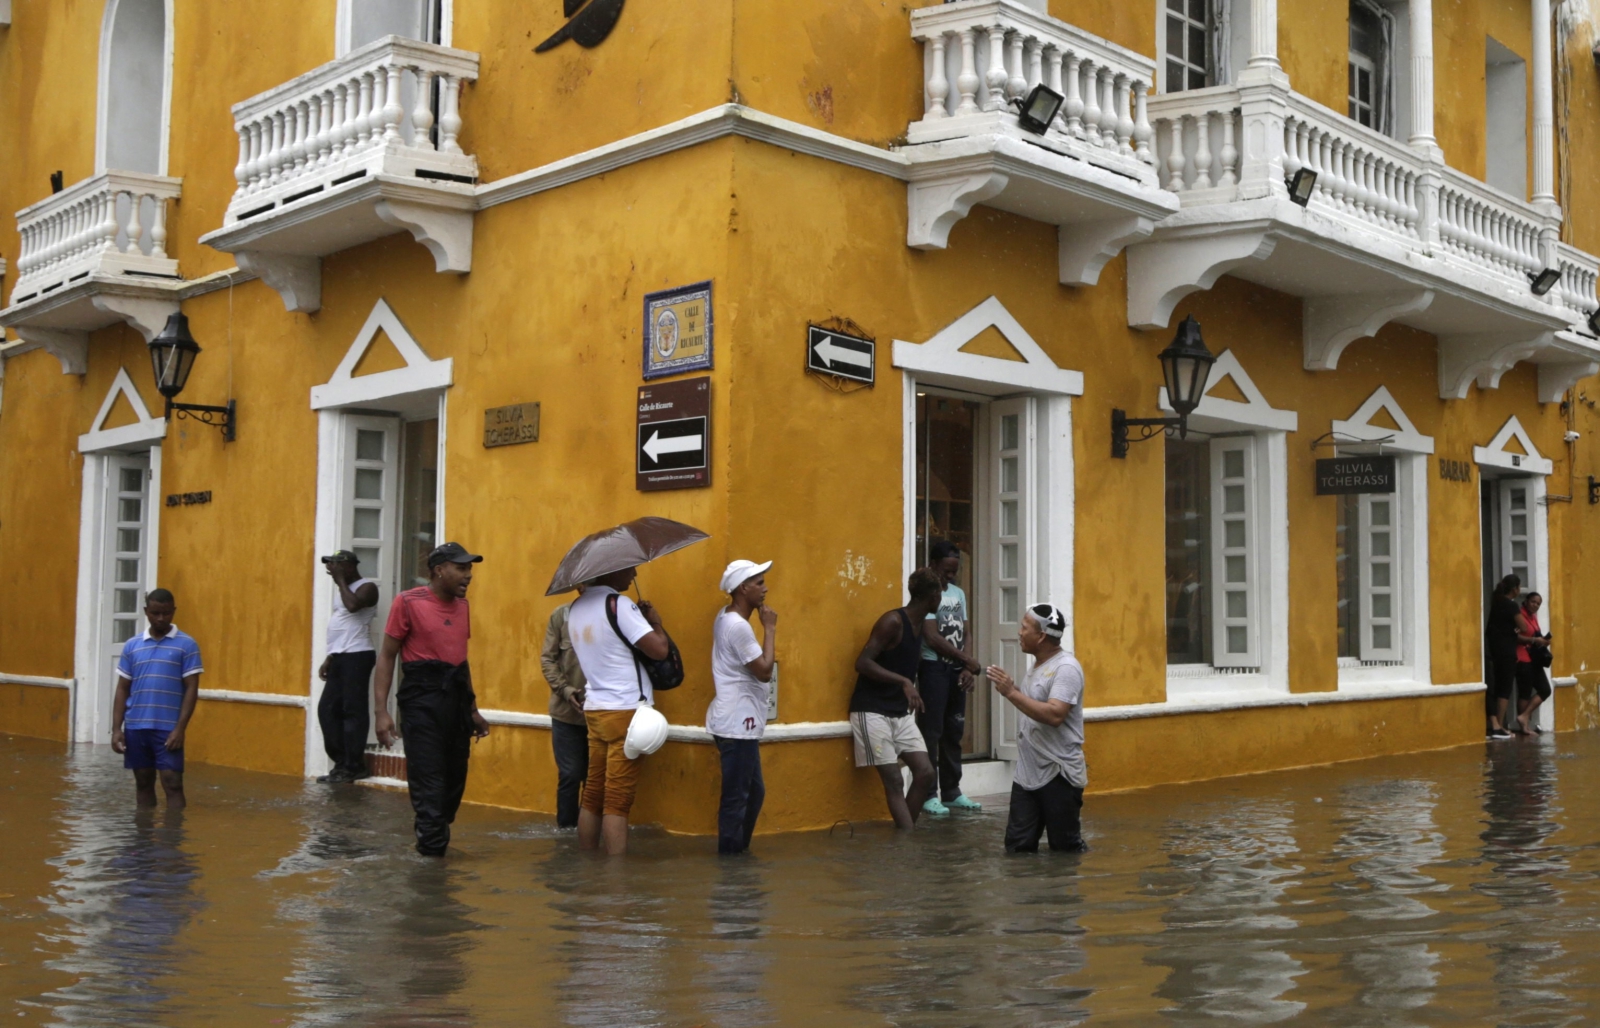 Po dużych deszczach ulice Cartagena de Indias w Kolumbii nadają się do żeglugi.